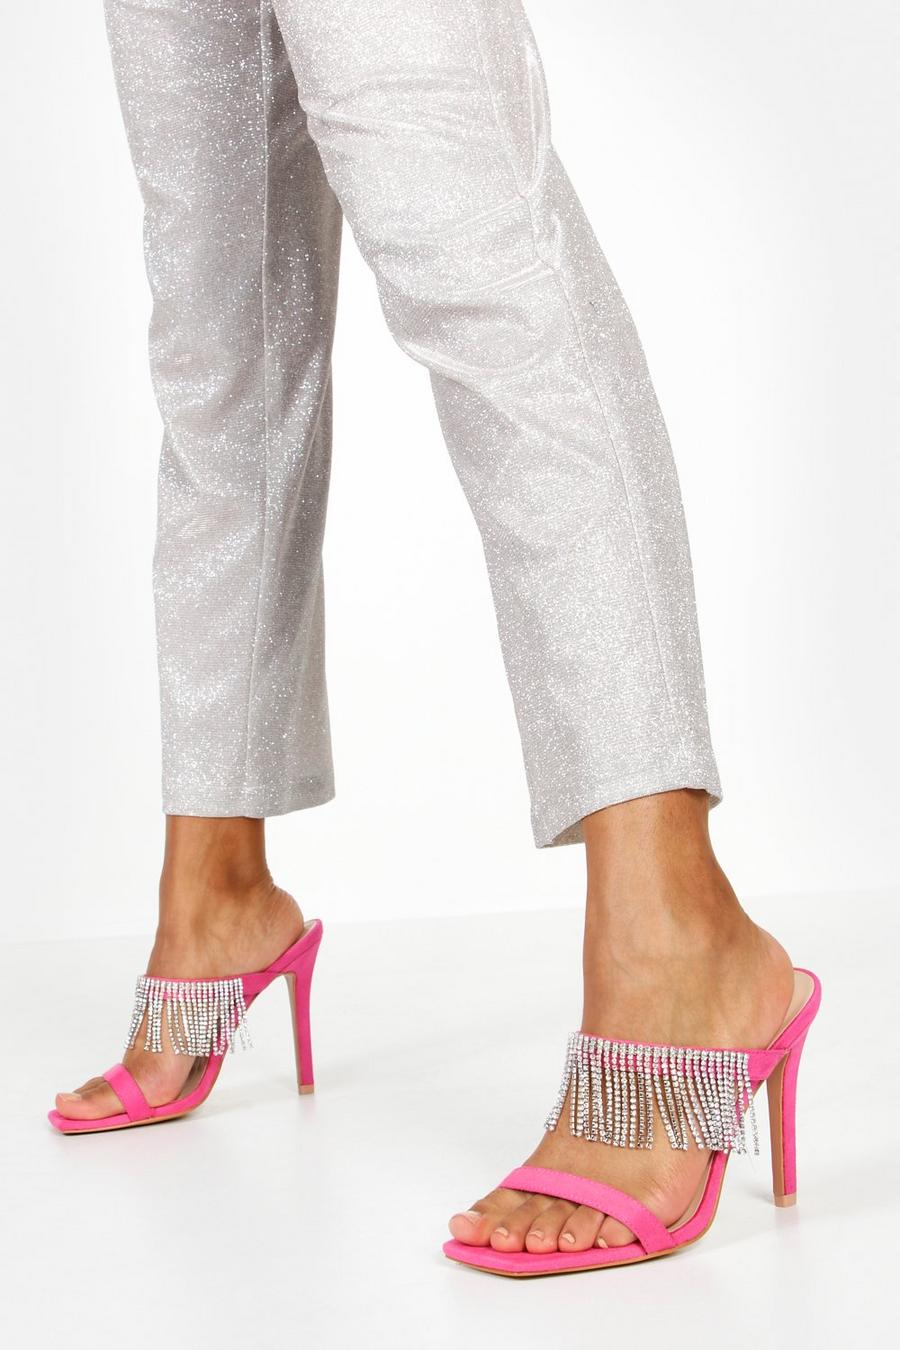 Zapatos de tacón stiletto con flecos y adornos, Hot pink image number 1